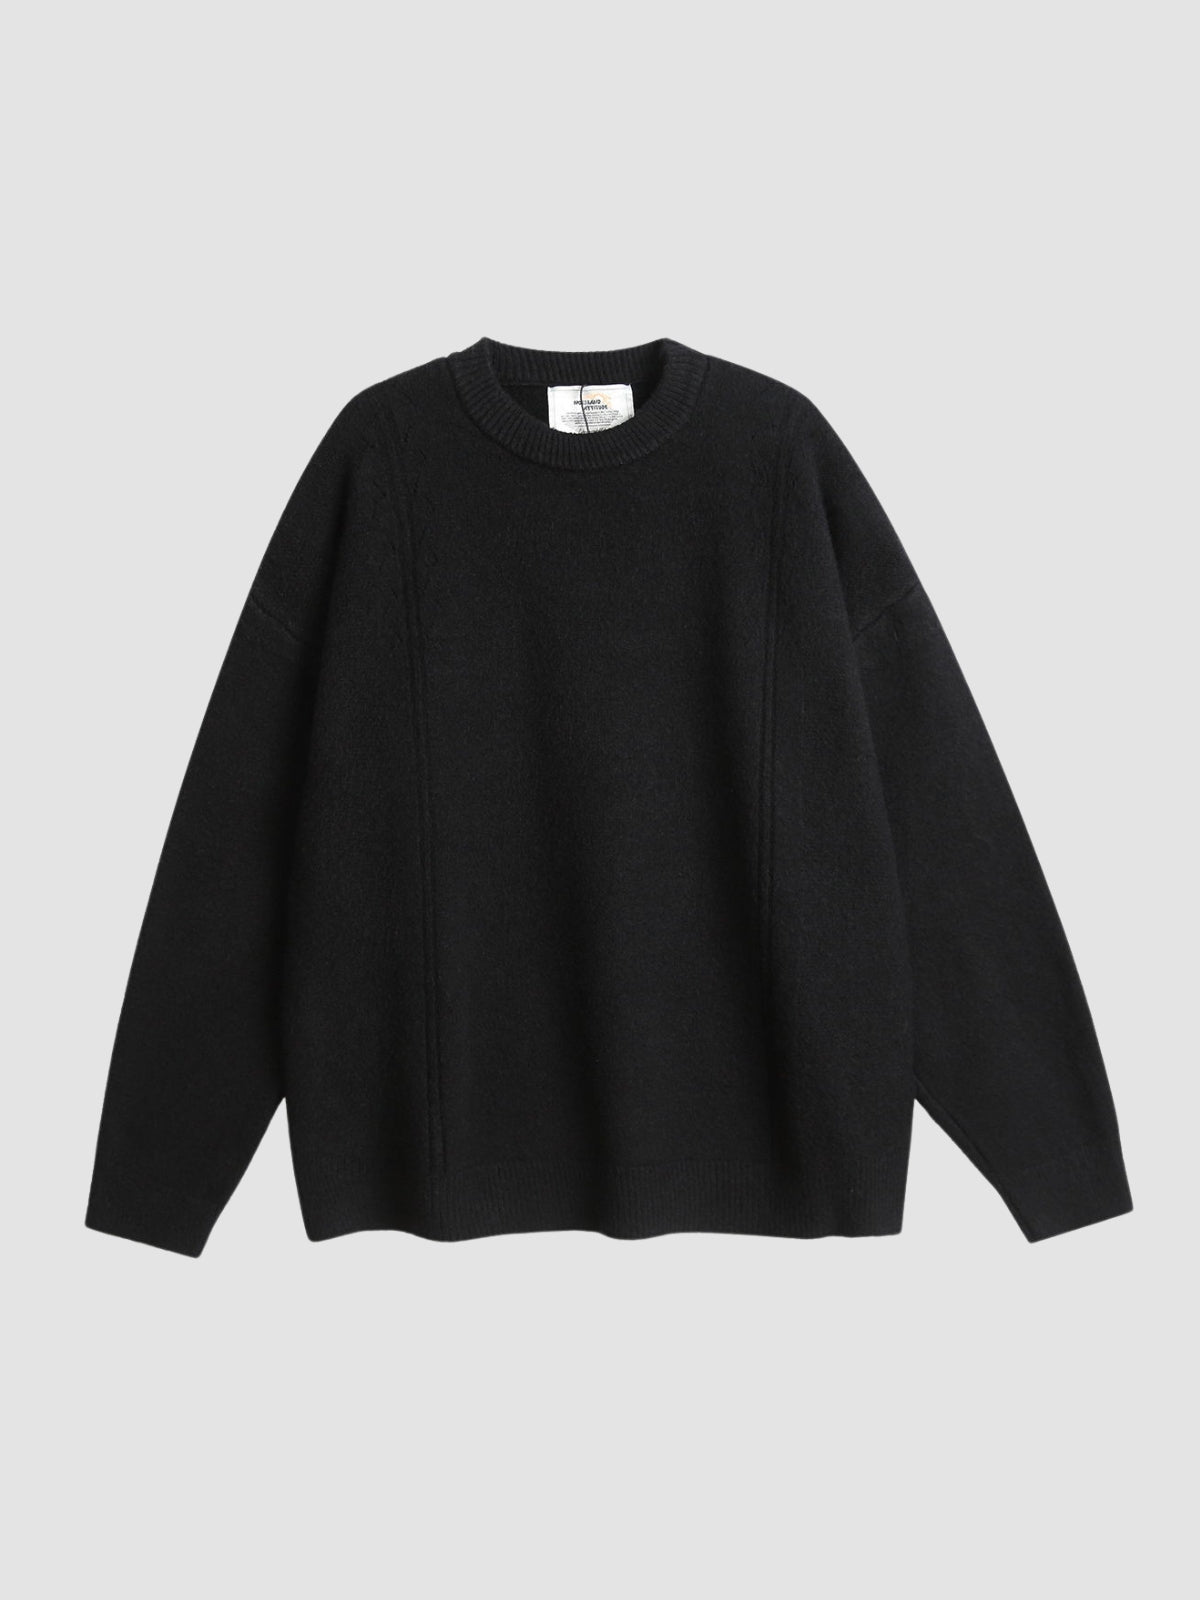 WLS Retro Loose Versatile Sweater